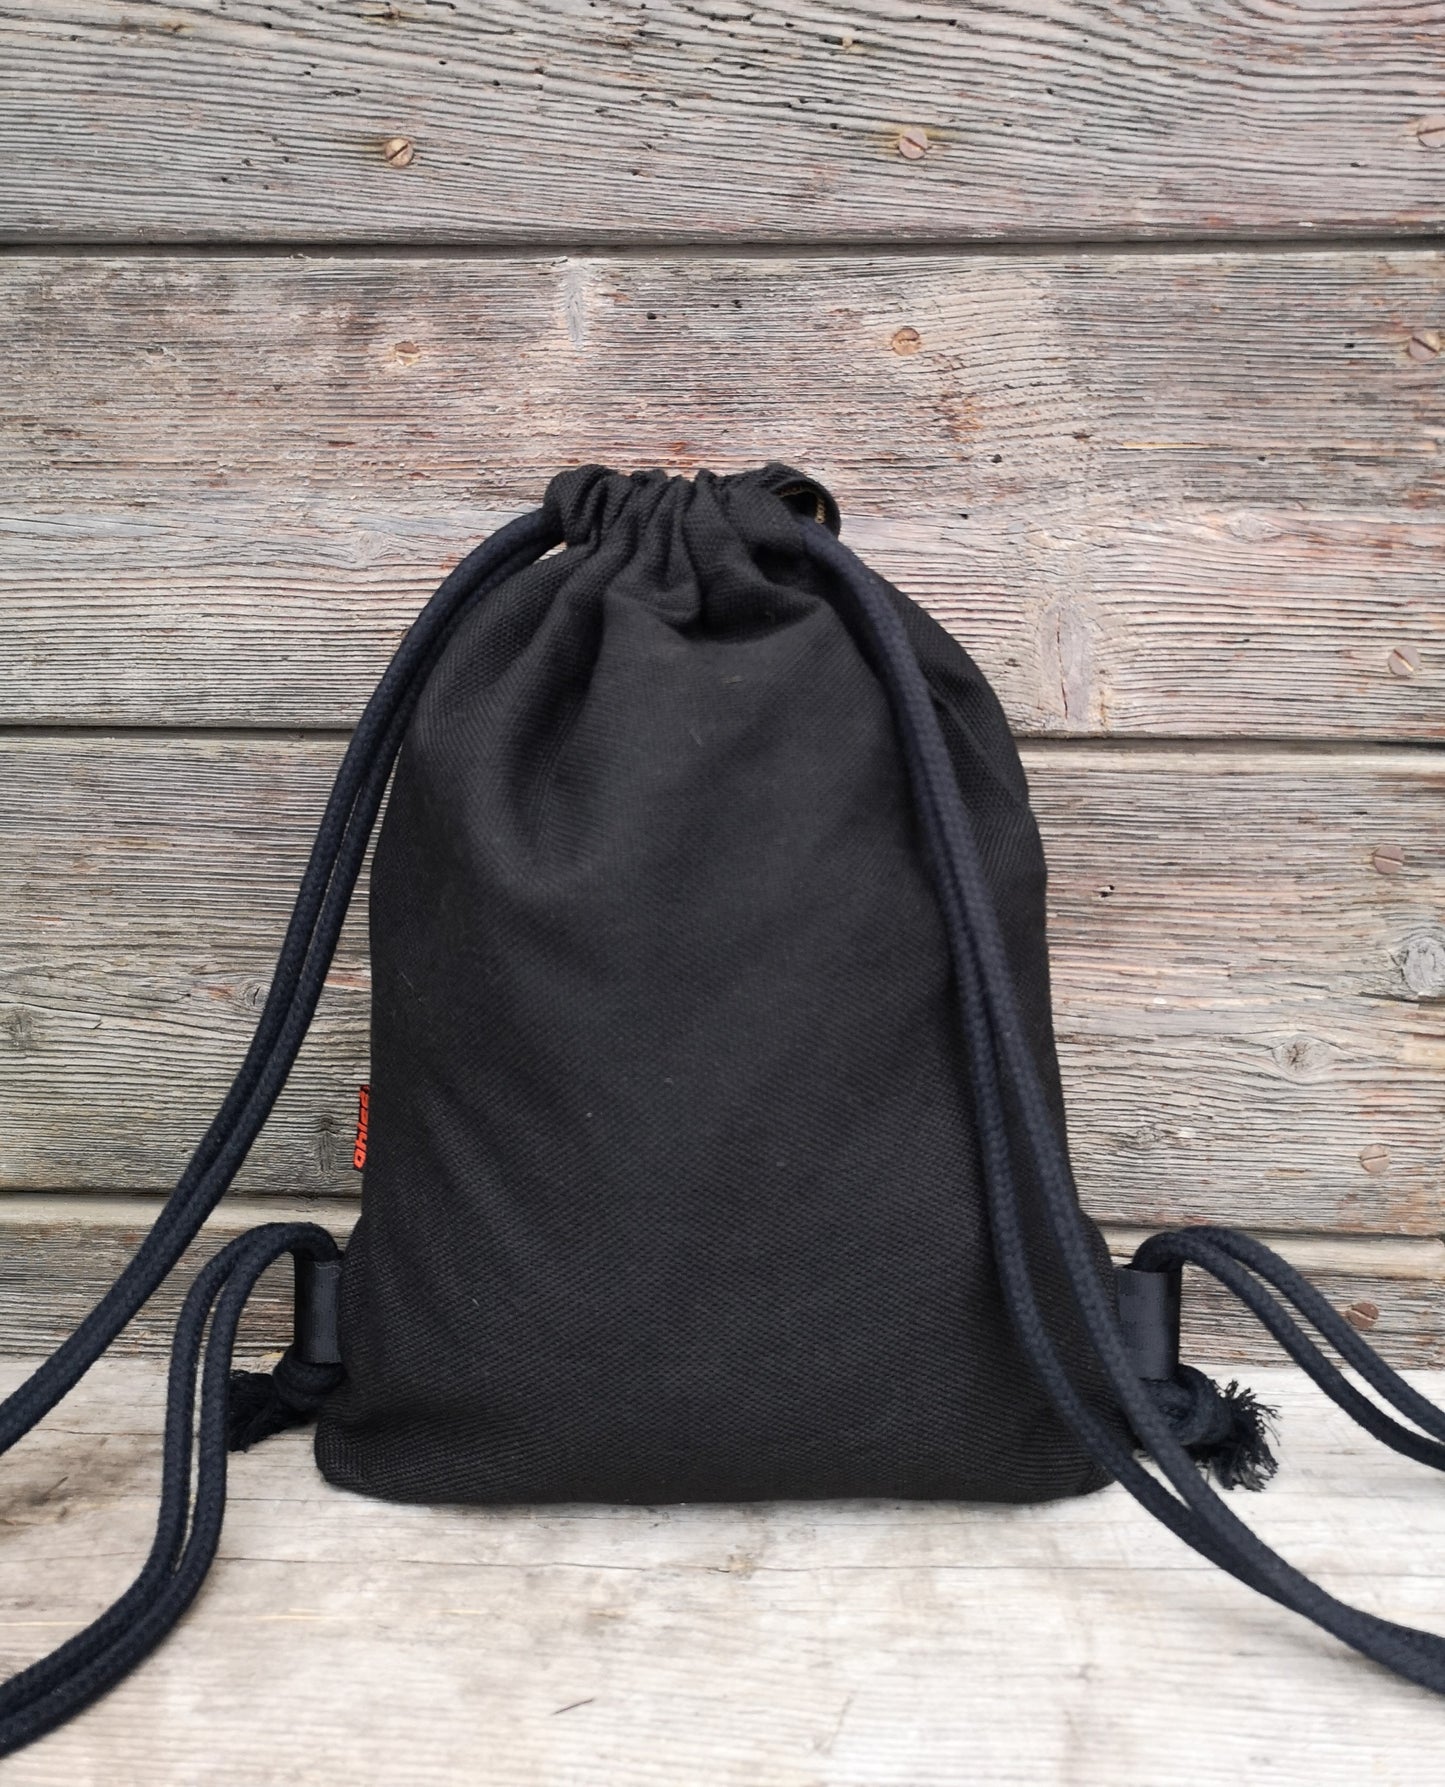 Drawstring Bag in mix cotton Pinecone Black